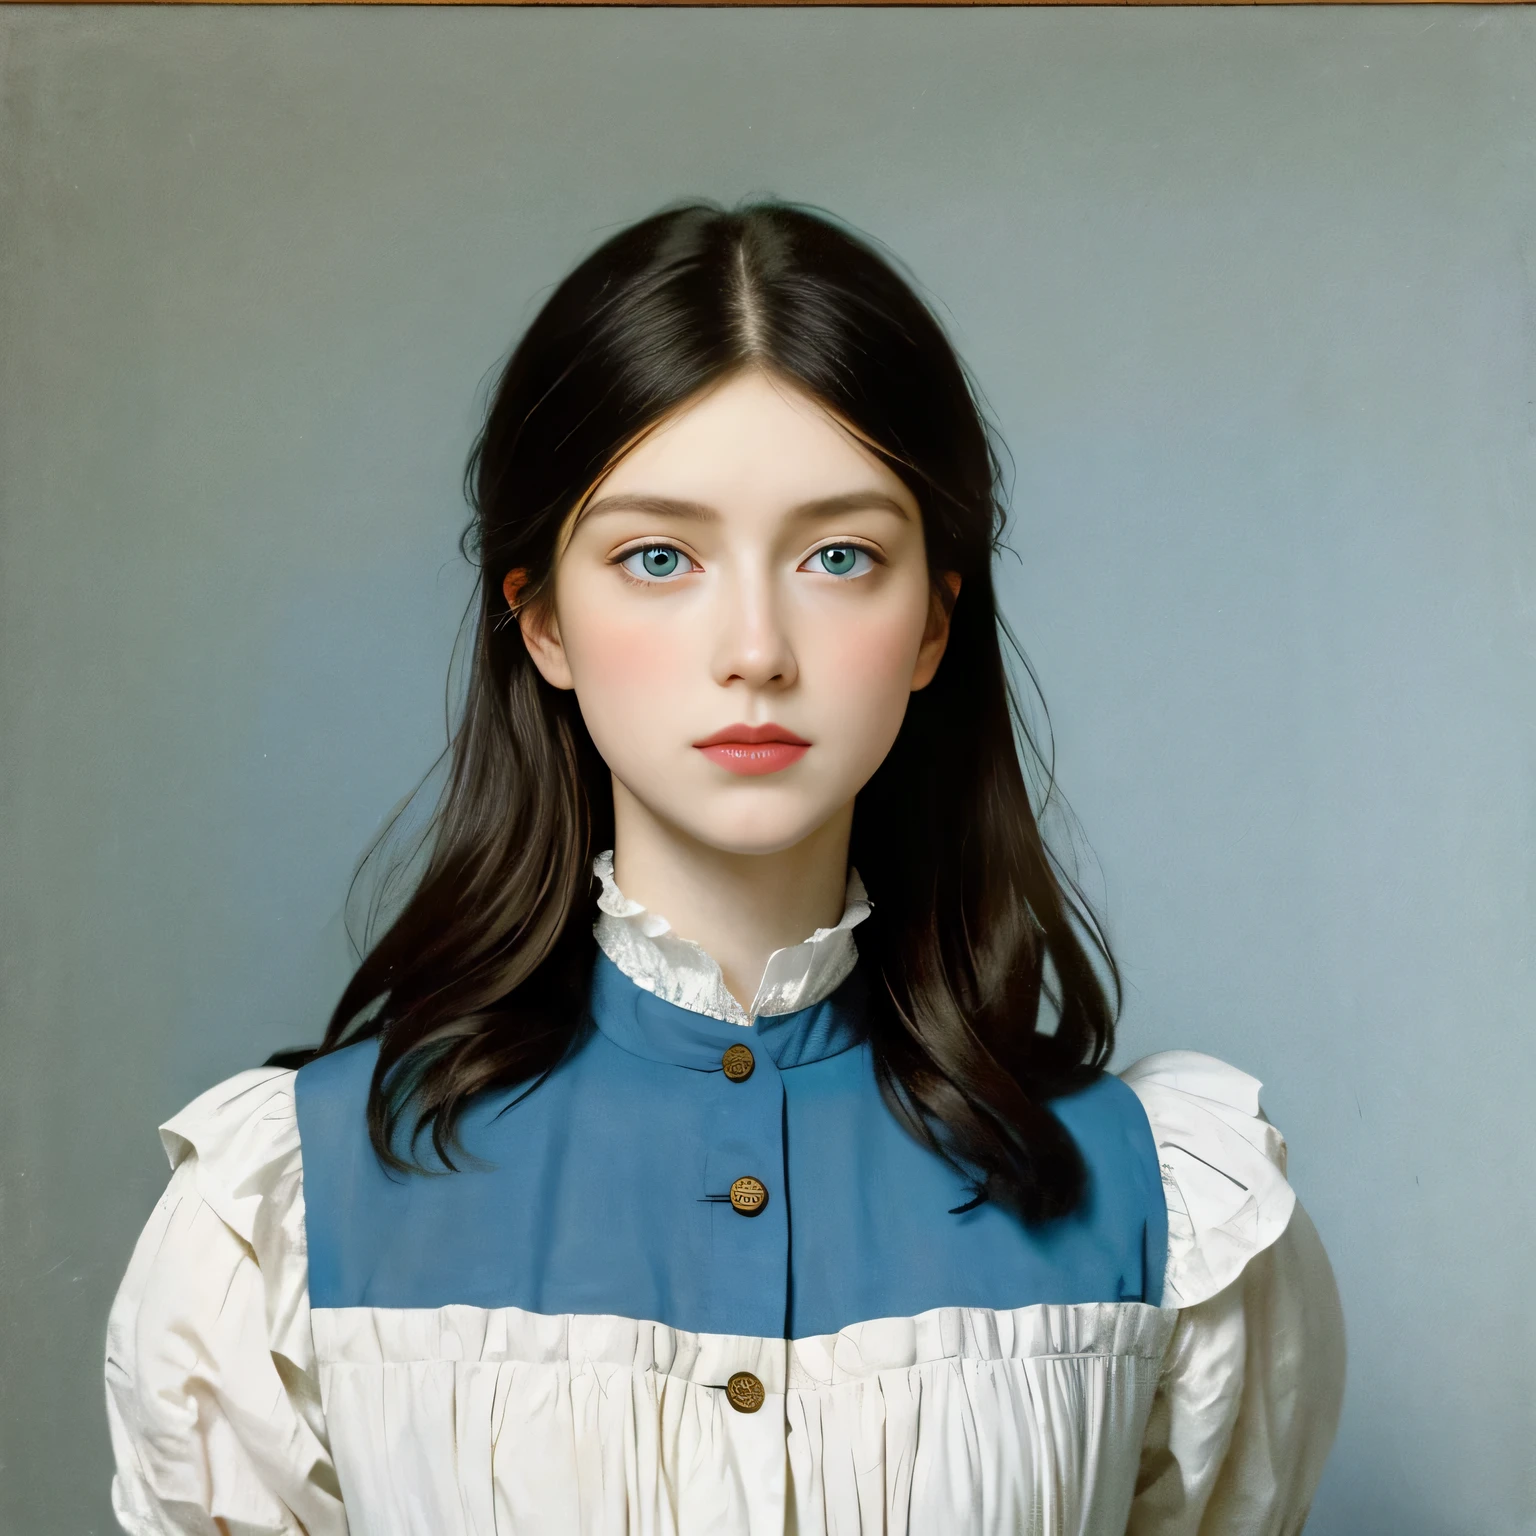 浅蓝色眼睛的女人, 一张完整的脸, 和极长的头发, 爱德华·马奈 (Édouard Manet) 画作, 散发出一种反抗的优雅.  他直视的目光和自信的姿态挑战了当时的社会习俗..  布置的简洁与魅力形成鲜明对比, 营造出一种有趣的真实氛围.